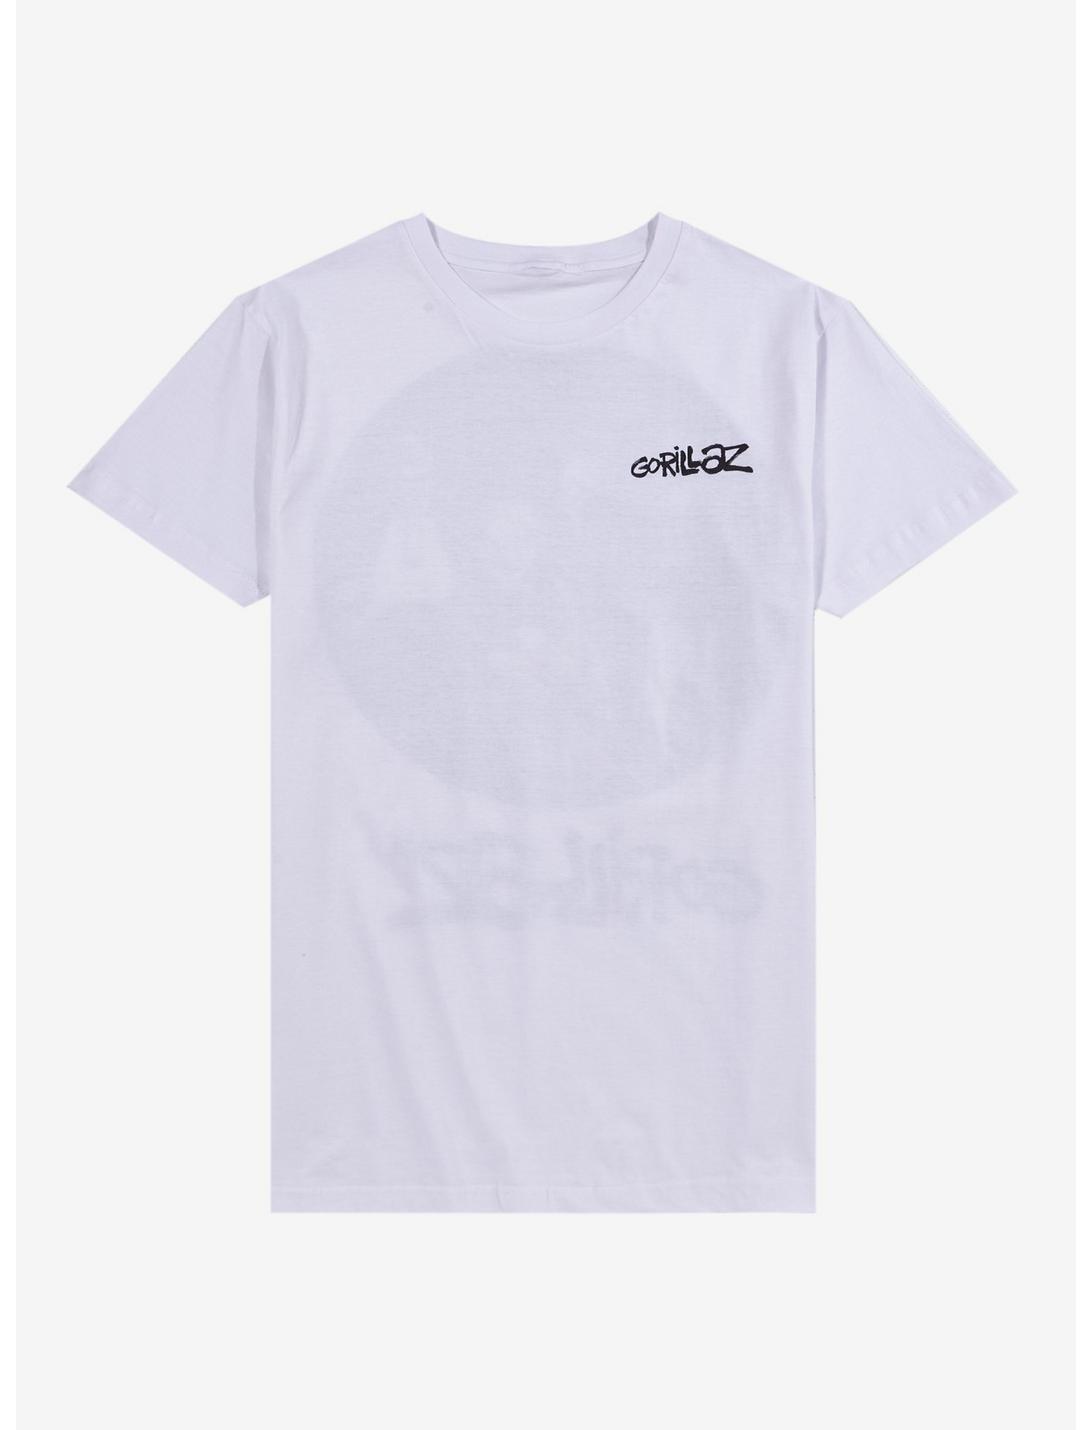 Gorillaz Song Machine Group Boyfriend Fit Girls T-Shirt, BRIGHT WHITE, hi-res